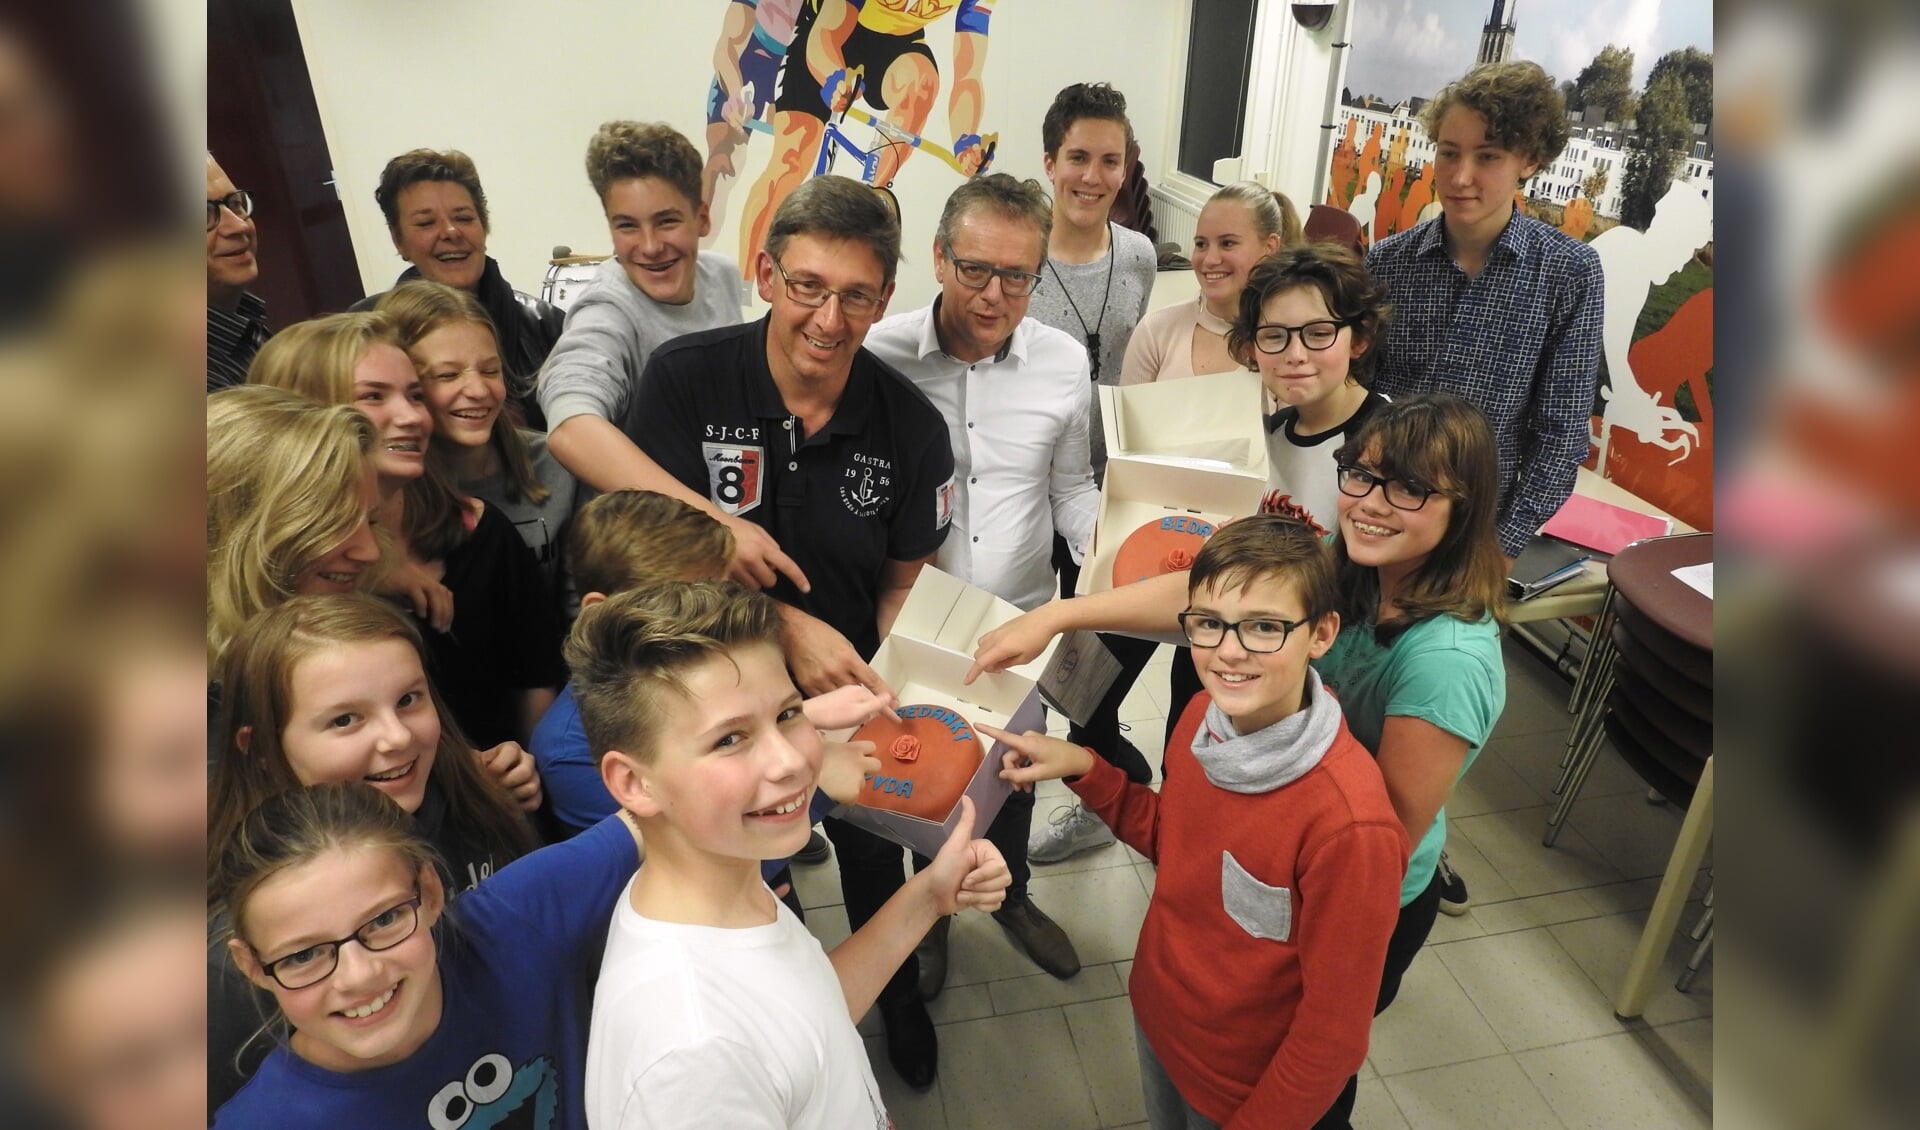 De leden van jeugddweilorkest Kleintje Spul(t) nemen de Rode Taart in ontvangst. Foto: PR